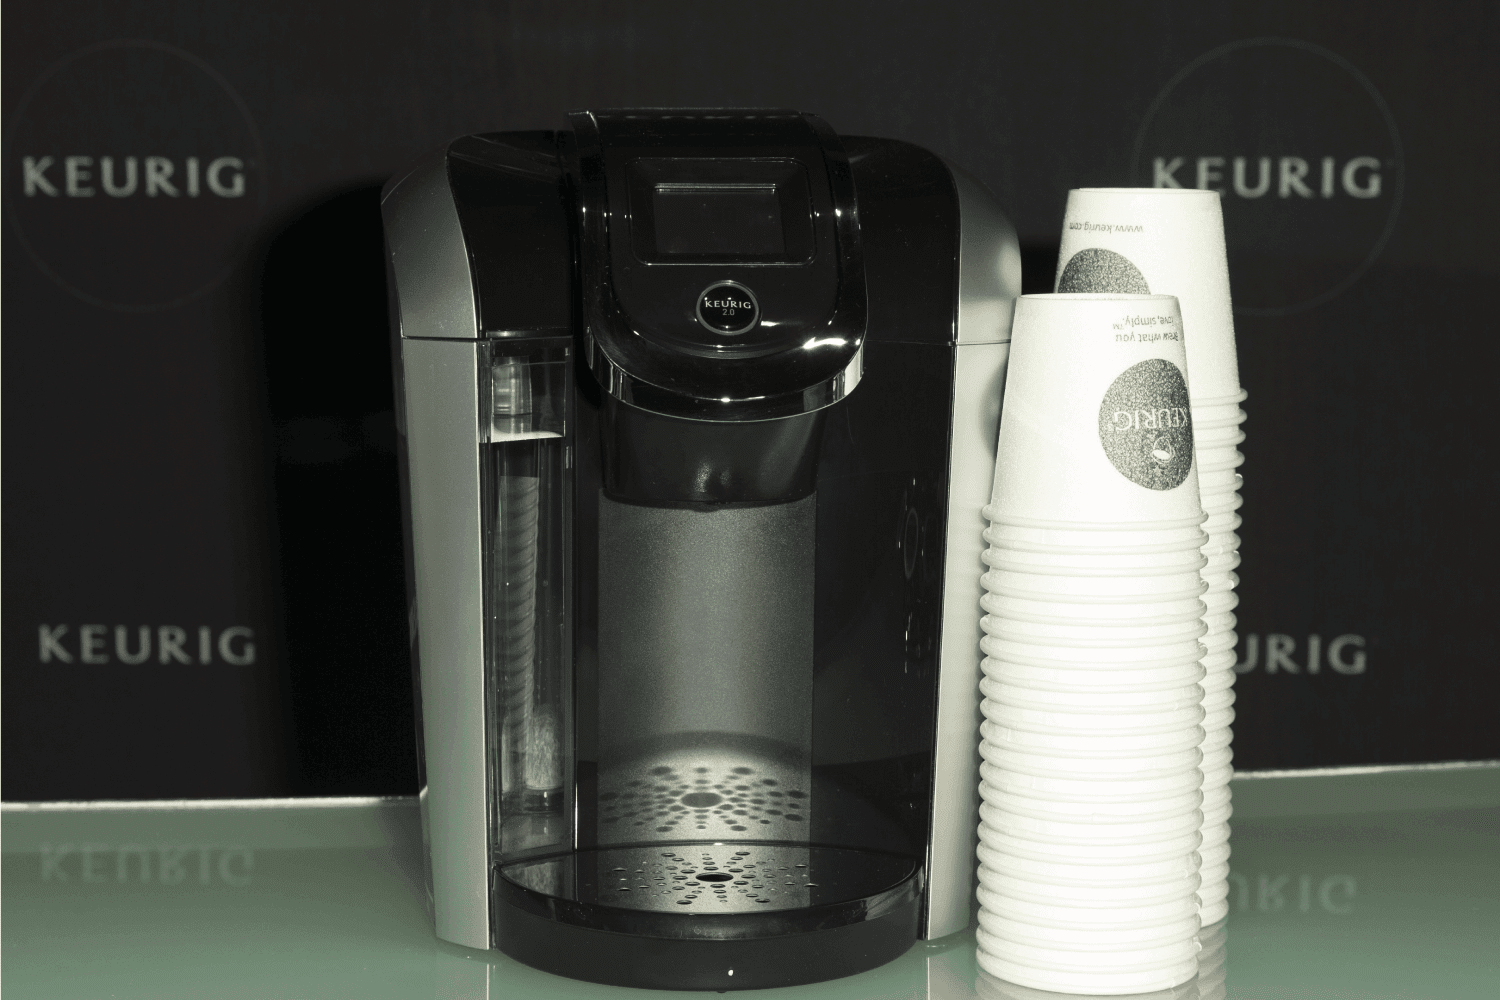 eurig coffee machine on display during premiere